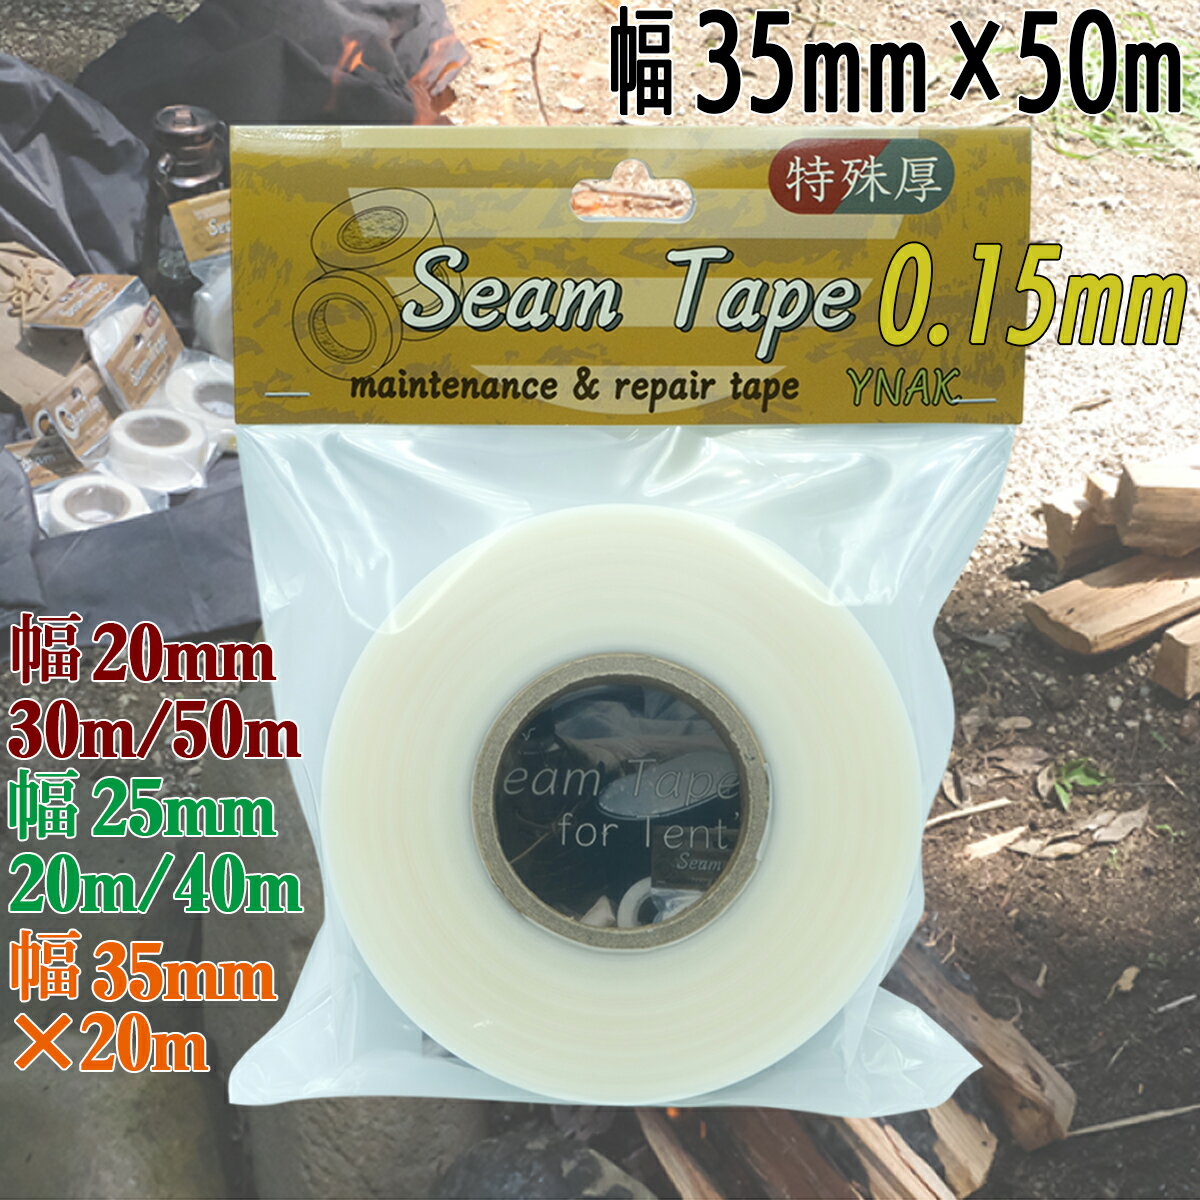 シームテープ 特殊厚 テント ザック タープ シート レインウェア 補修 メンテナンス 用 強力 アイロン接着 厚さ0.15mm 幅35mm 50m YNAK